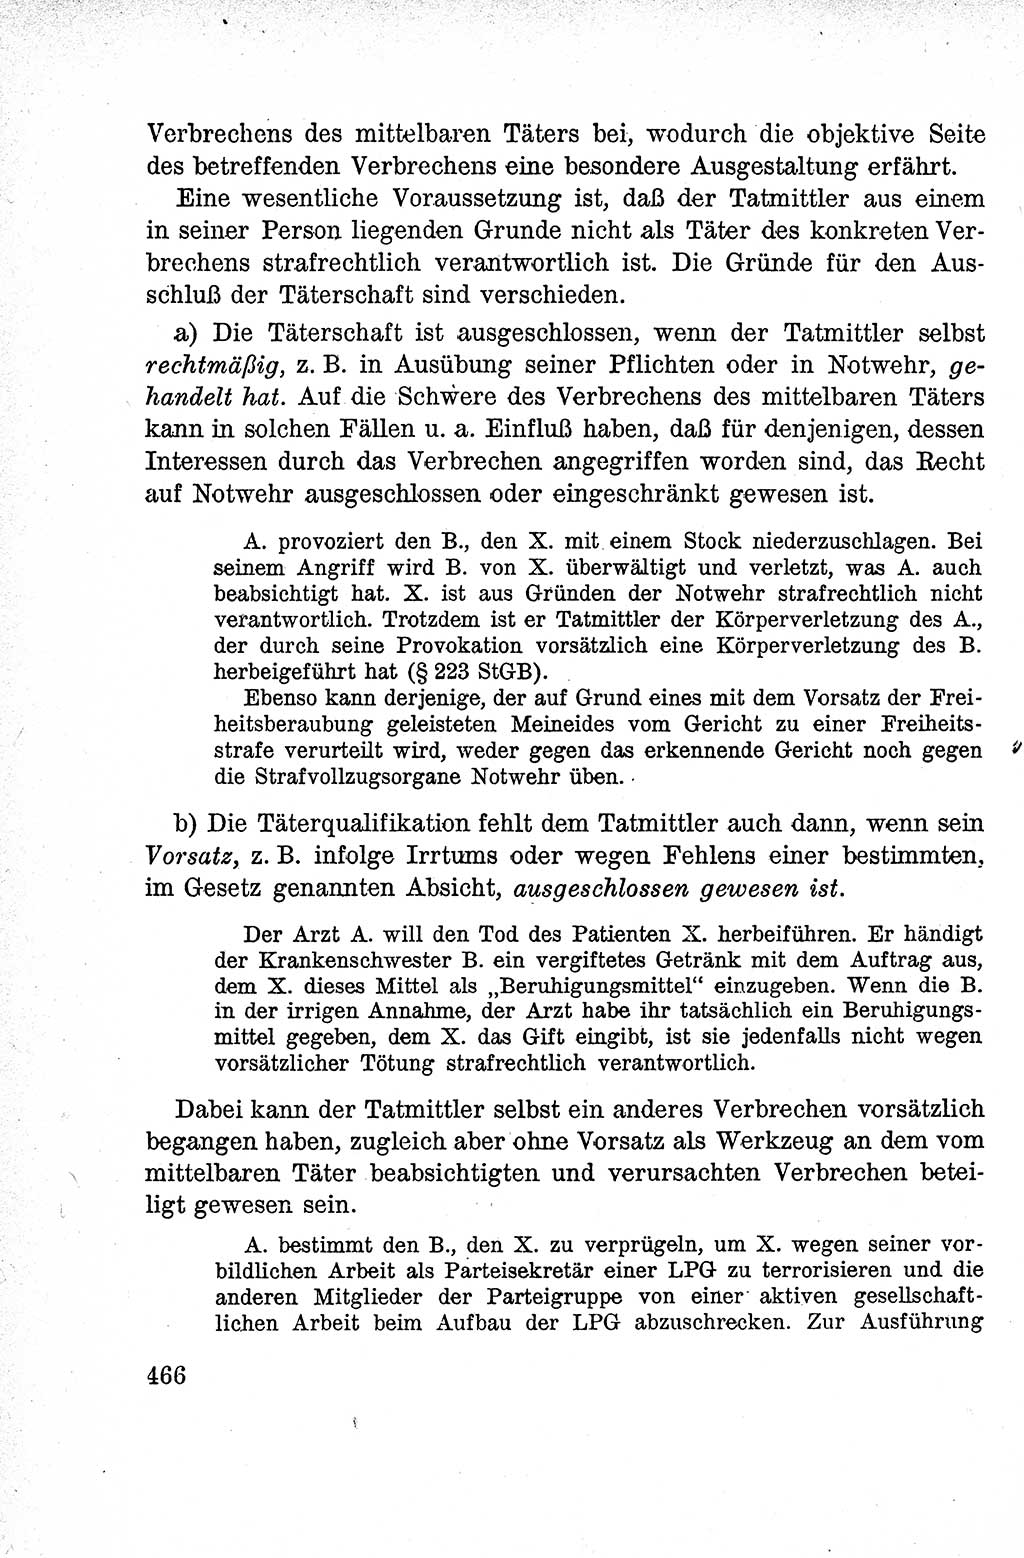 Lehrbuch des Strafrechts der Deutschen Demokratischen Republik (DDR), Allgemeiner Teil 1959, Seite 466 (Lb. Strafr. DDR AT 1959, S. 466)